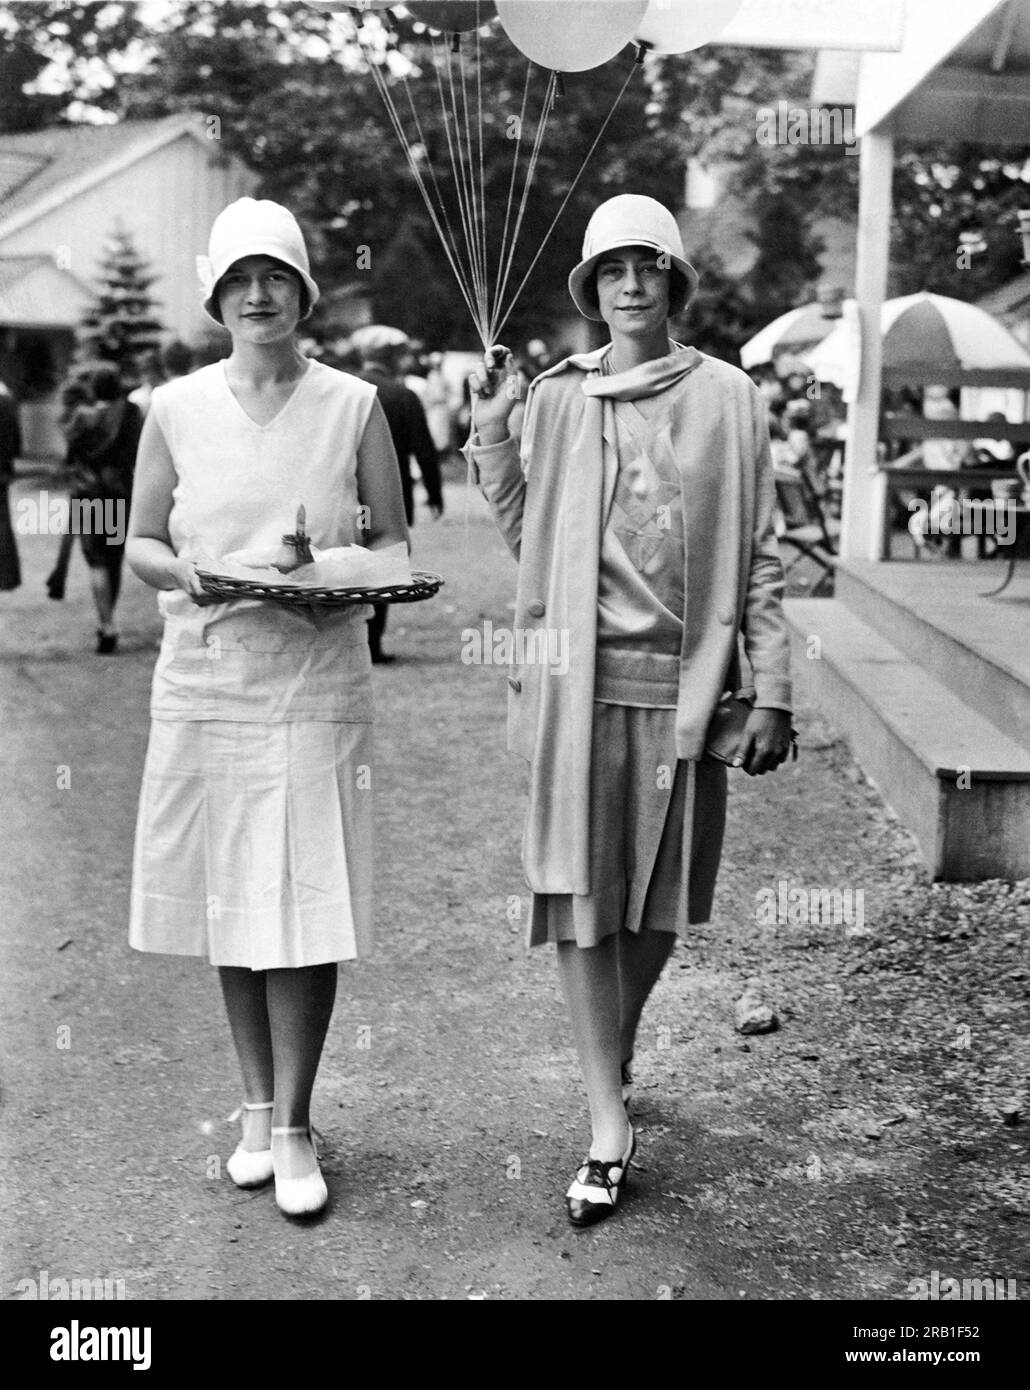 Devon, Pennsylvanie : vers 1927 deux jeunes femmes de la société qui vendent des hot-dogs et des ballons au Devon Charity Horse and Dog Show au profit de l'hôpital Bryn Mawr. Banque D'Images